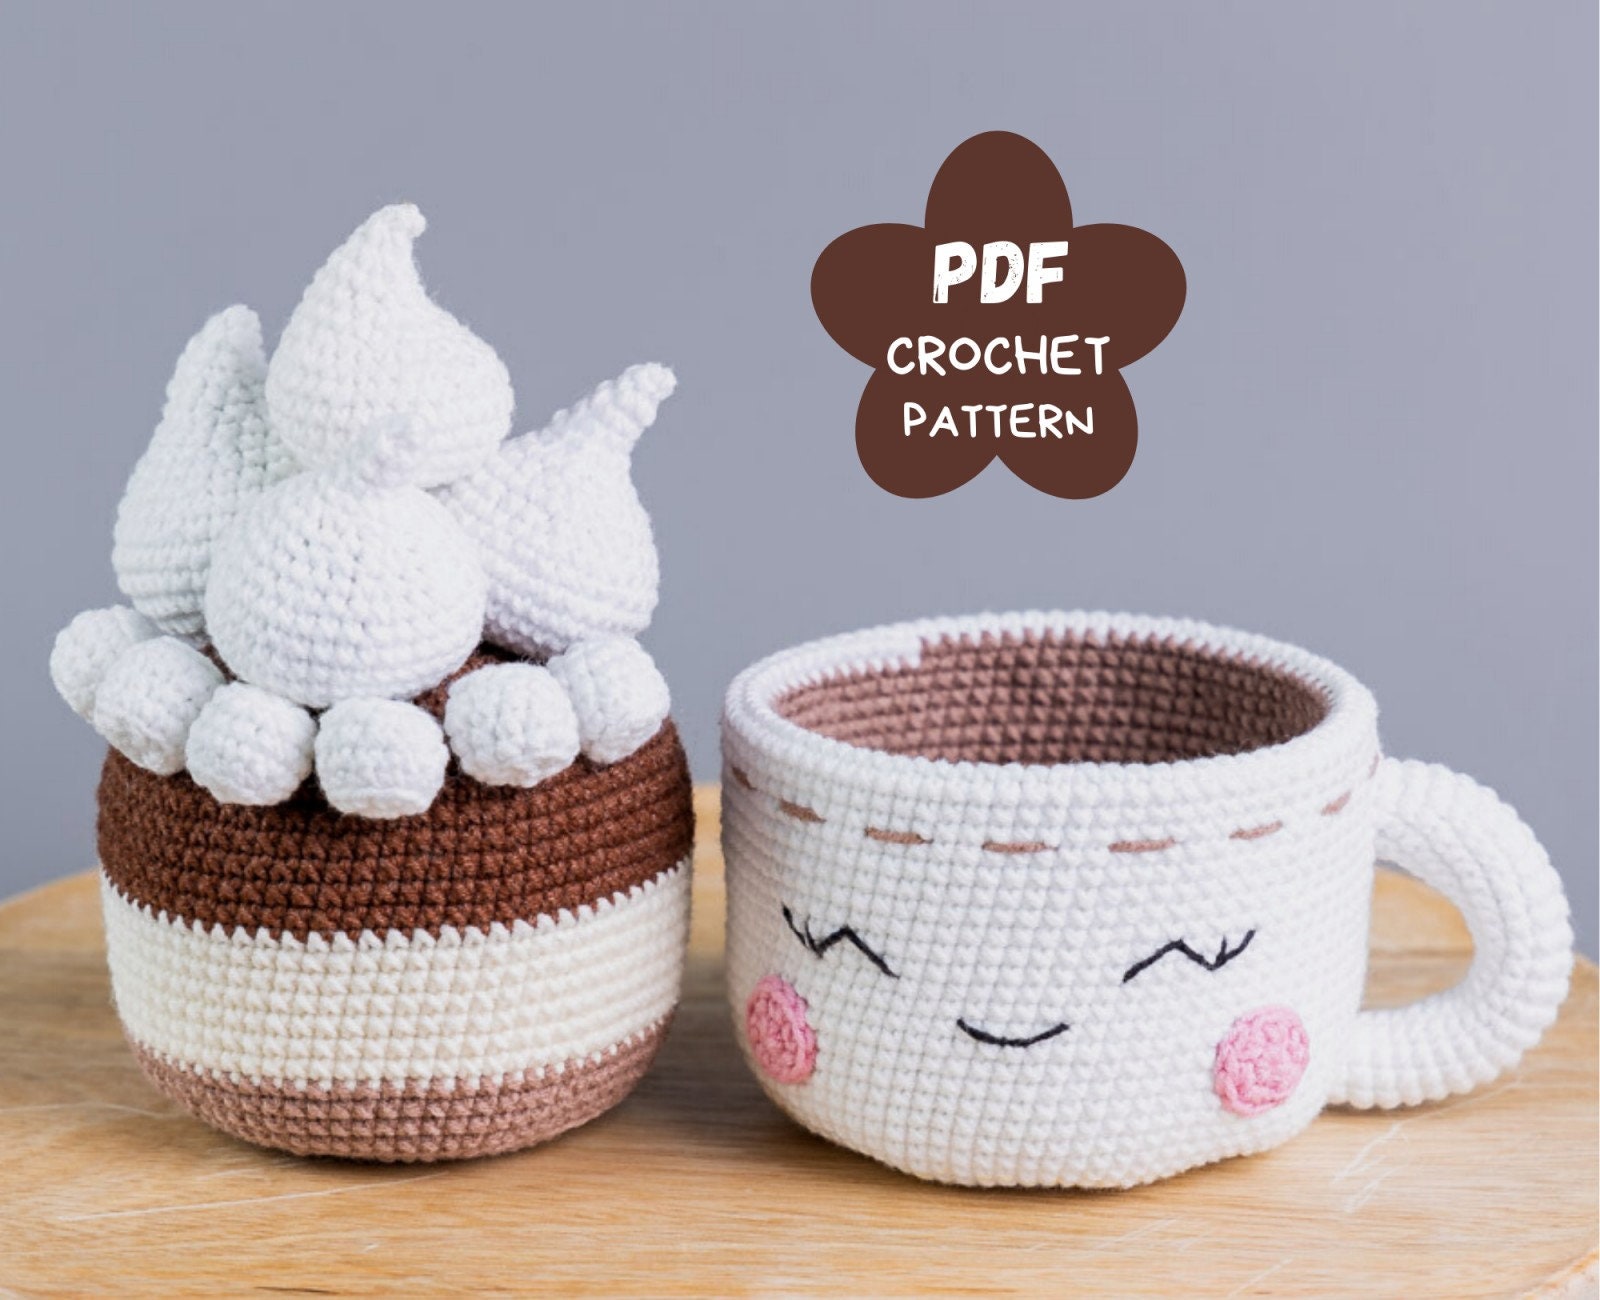 Coffee Mug Crochet Kit for Beginners